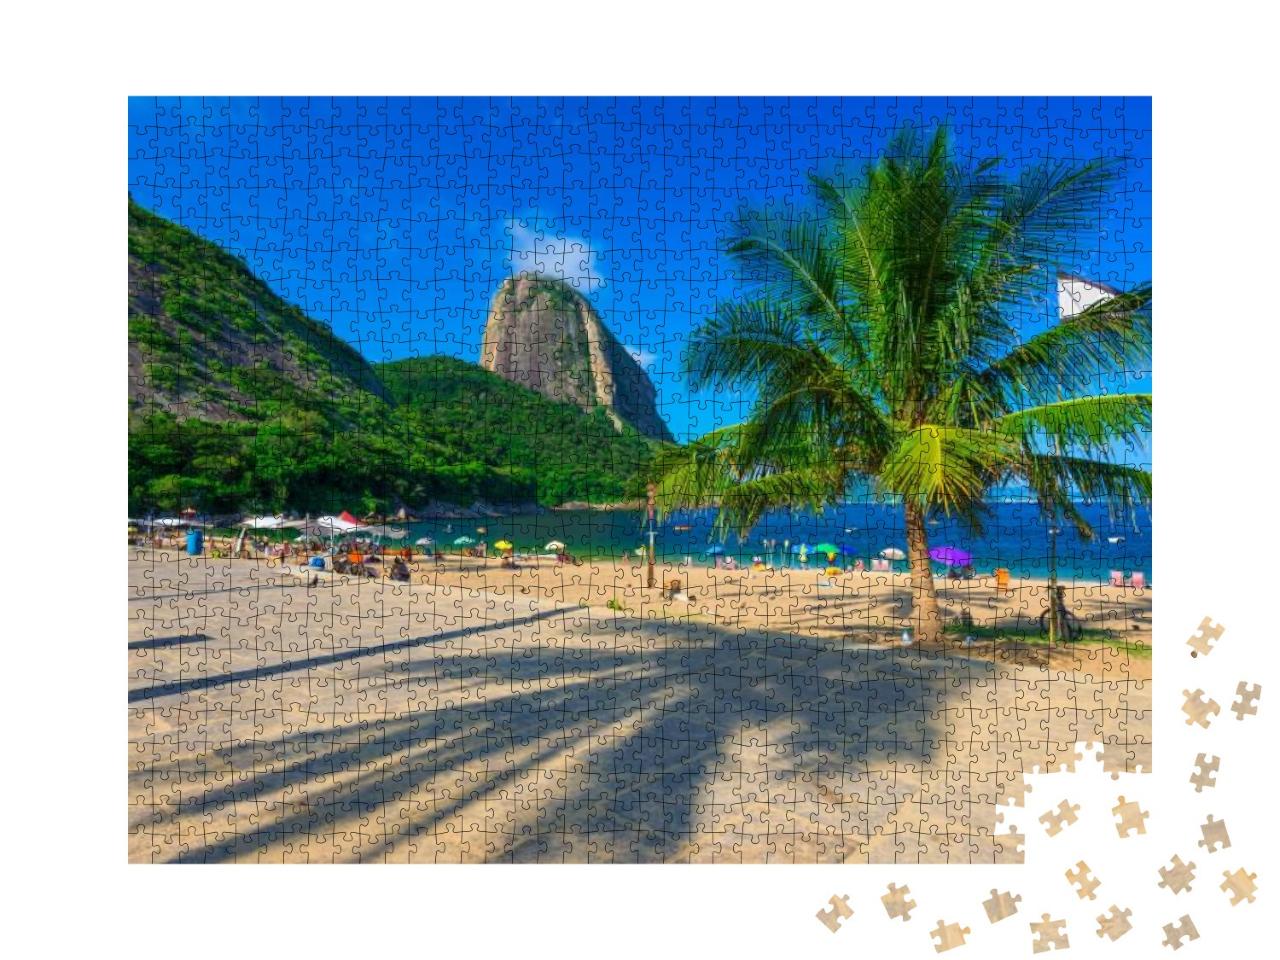 Mountain Sugar Loaf & Vermelha Beach in Rio De Janeiro. B... Jigsaw Puzzle with 1000 pieces